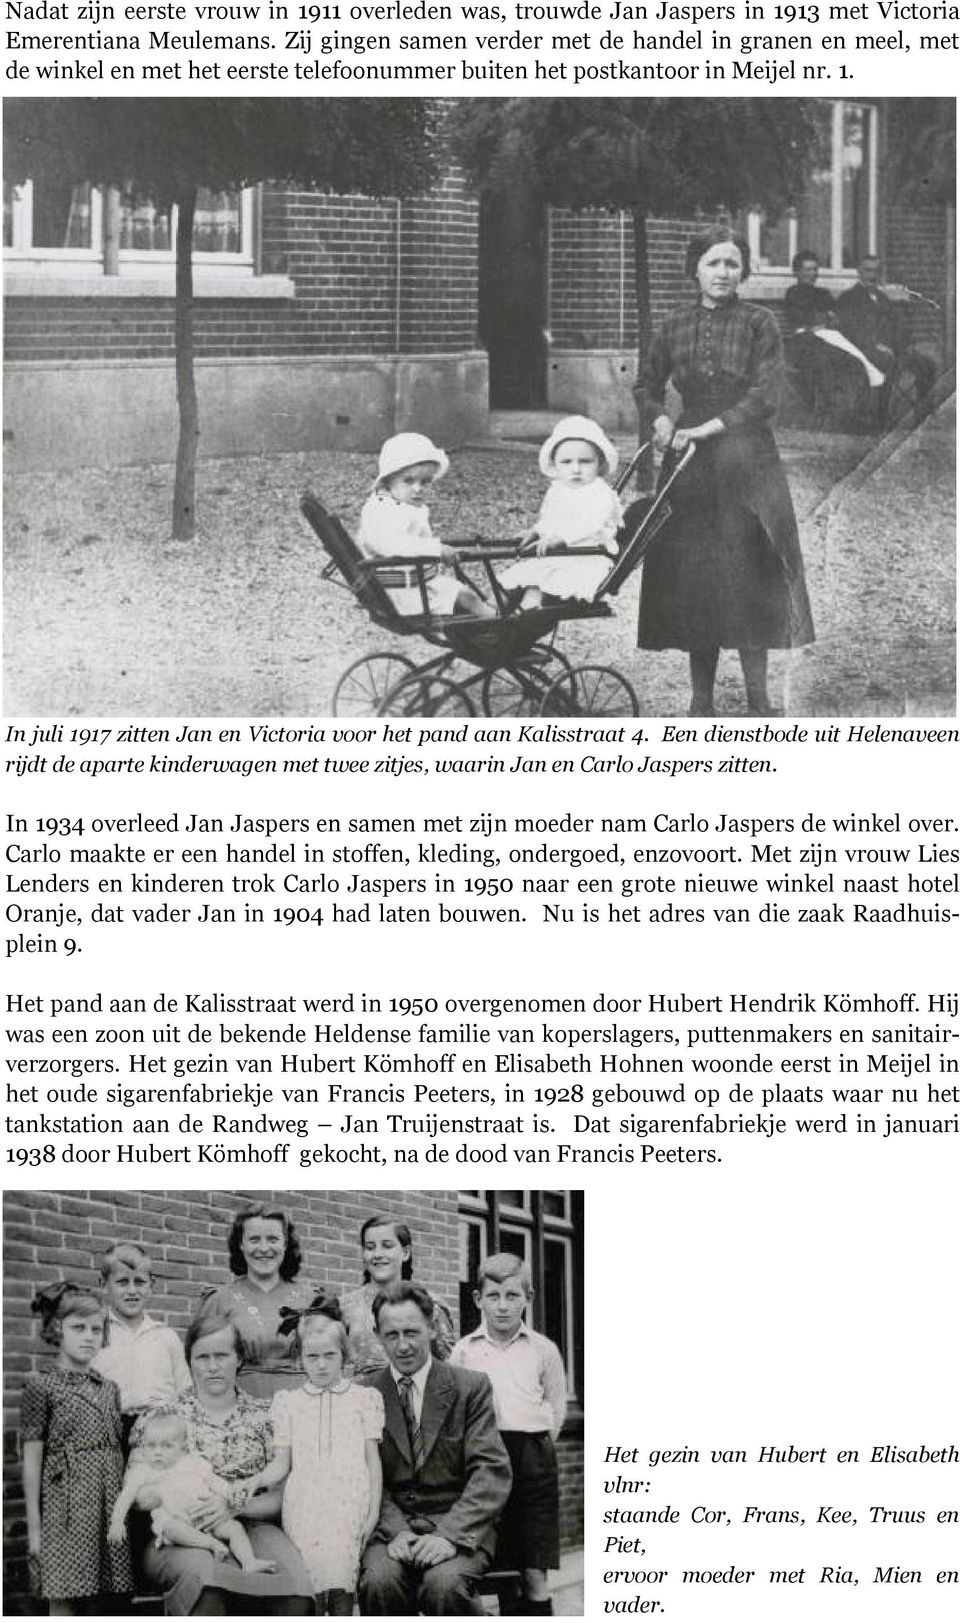 In juli 1917 zitten Jan en Victoria voor het pand aan Kalisstraat 4. Een dienstbode uit Helenaveen rijdt de aparte kinderwagen met twee zitjes, waarin Jan en Carlo Jaspers zitten.